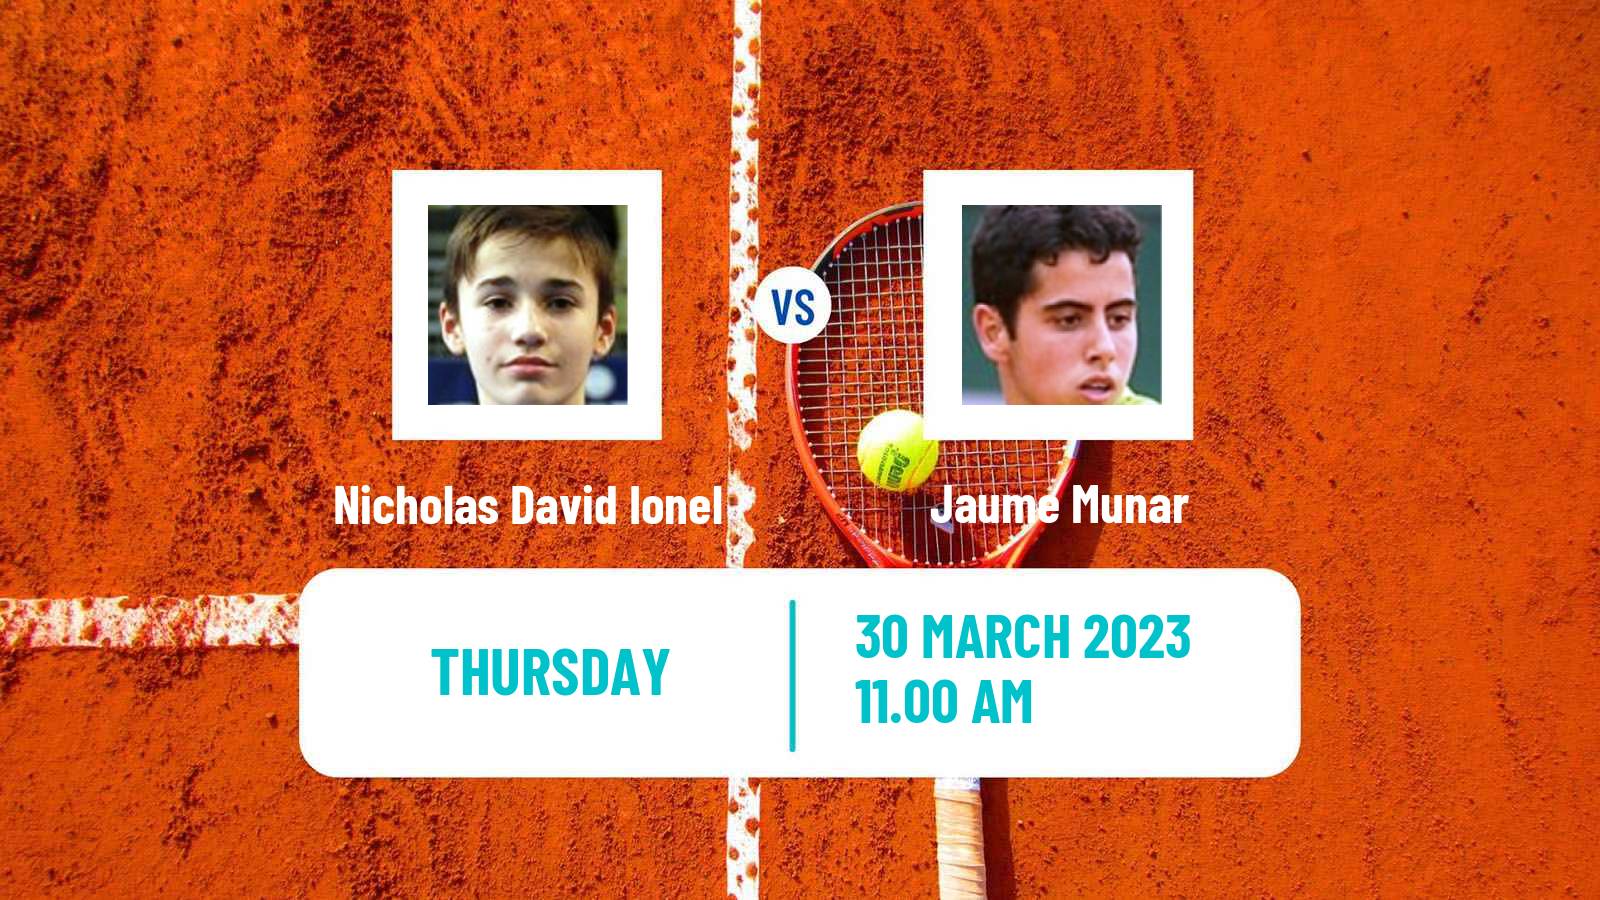 Tennis ATP Challenger Nicholas David Ionel - Jaume Munar